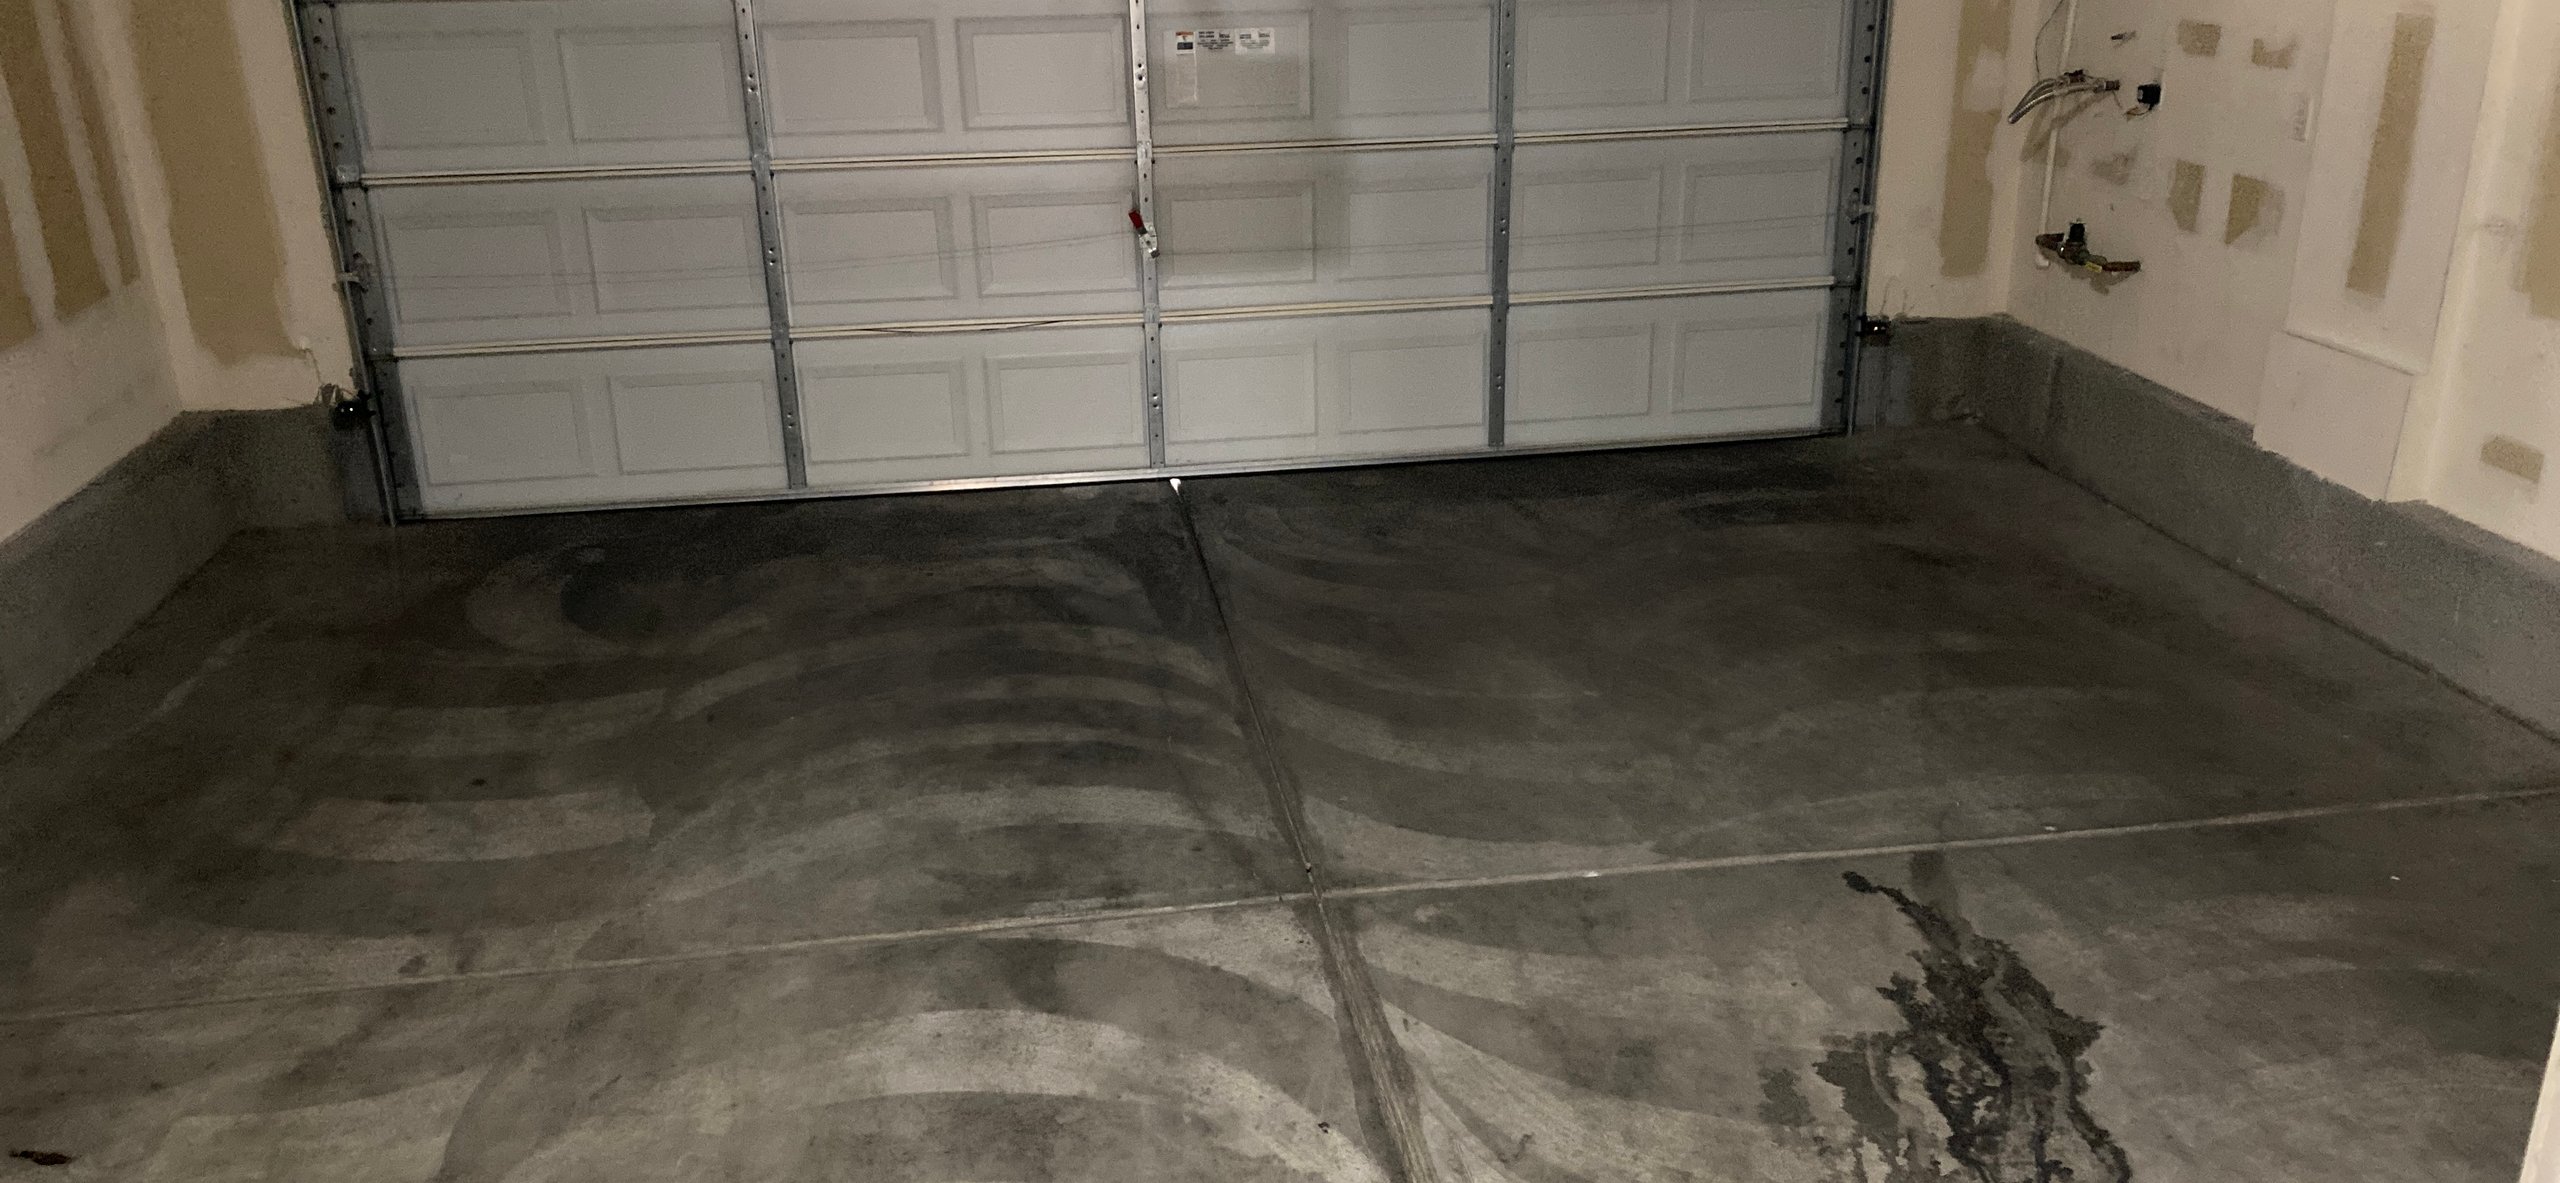 10x15 Garage self storage unit in Henderson, NV